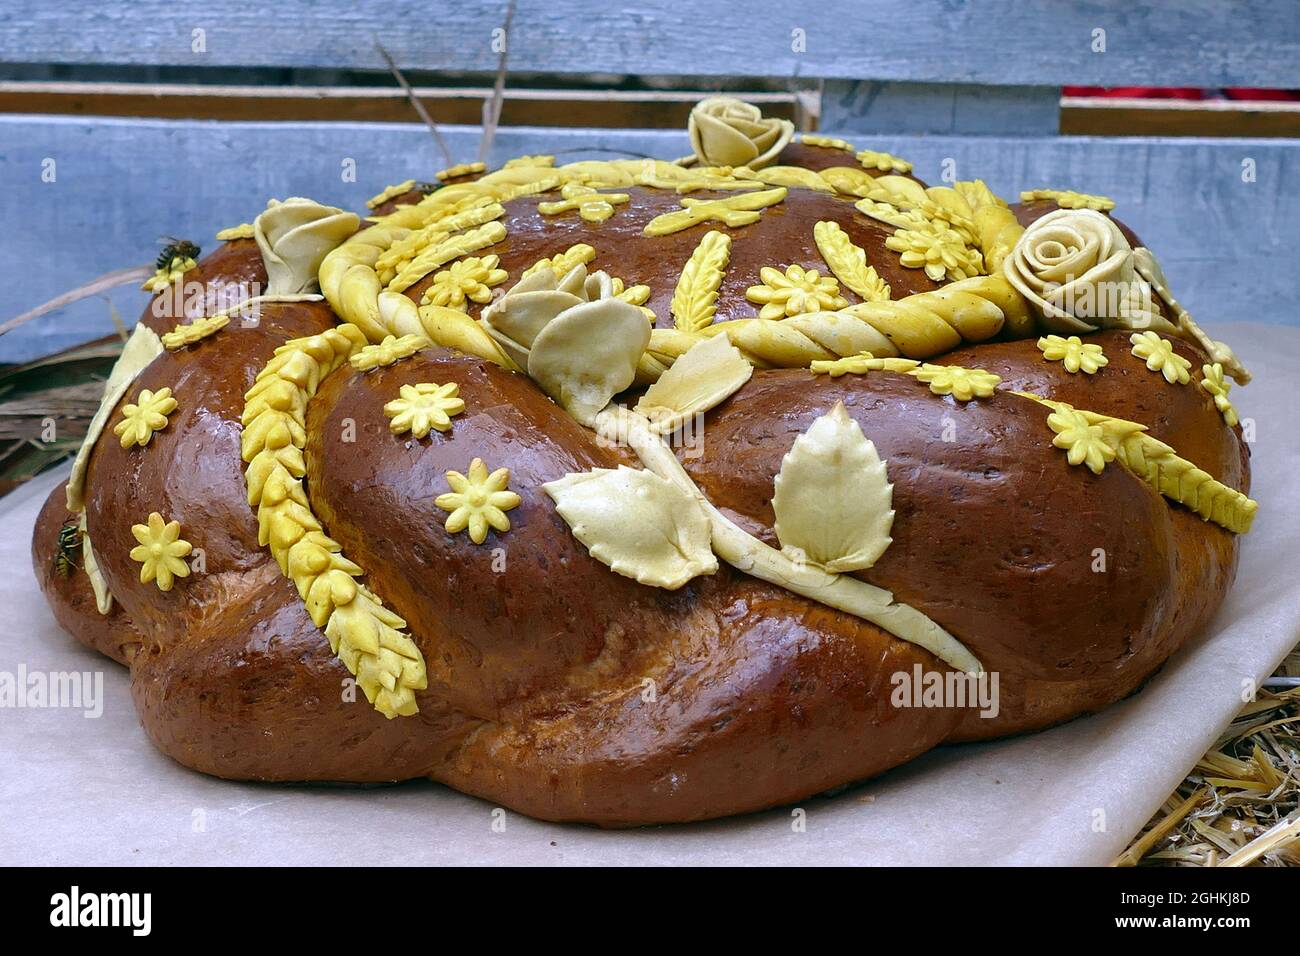 Non Exclusive: IVANO-FRANKIVSK, UKRAINE - 5. SEPTEMBER 2021 - Ein Korovai, die Art von Brot, das am häufigsten bei Hochzeiten verwendet wird, ist während der abgebildet Stockfoto